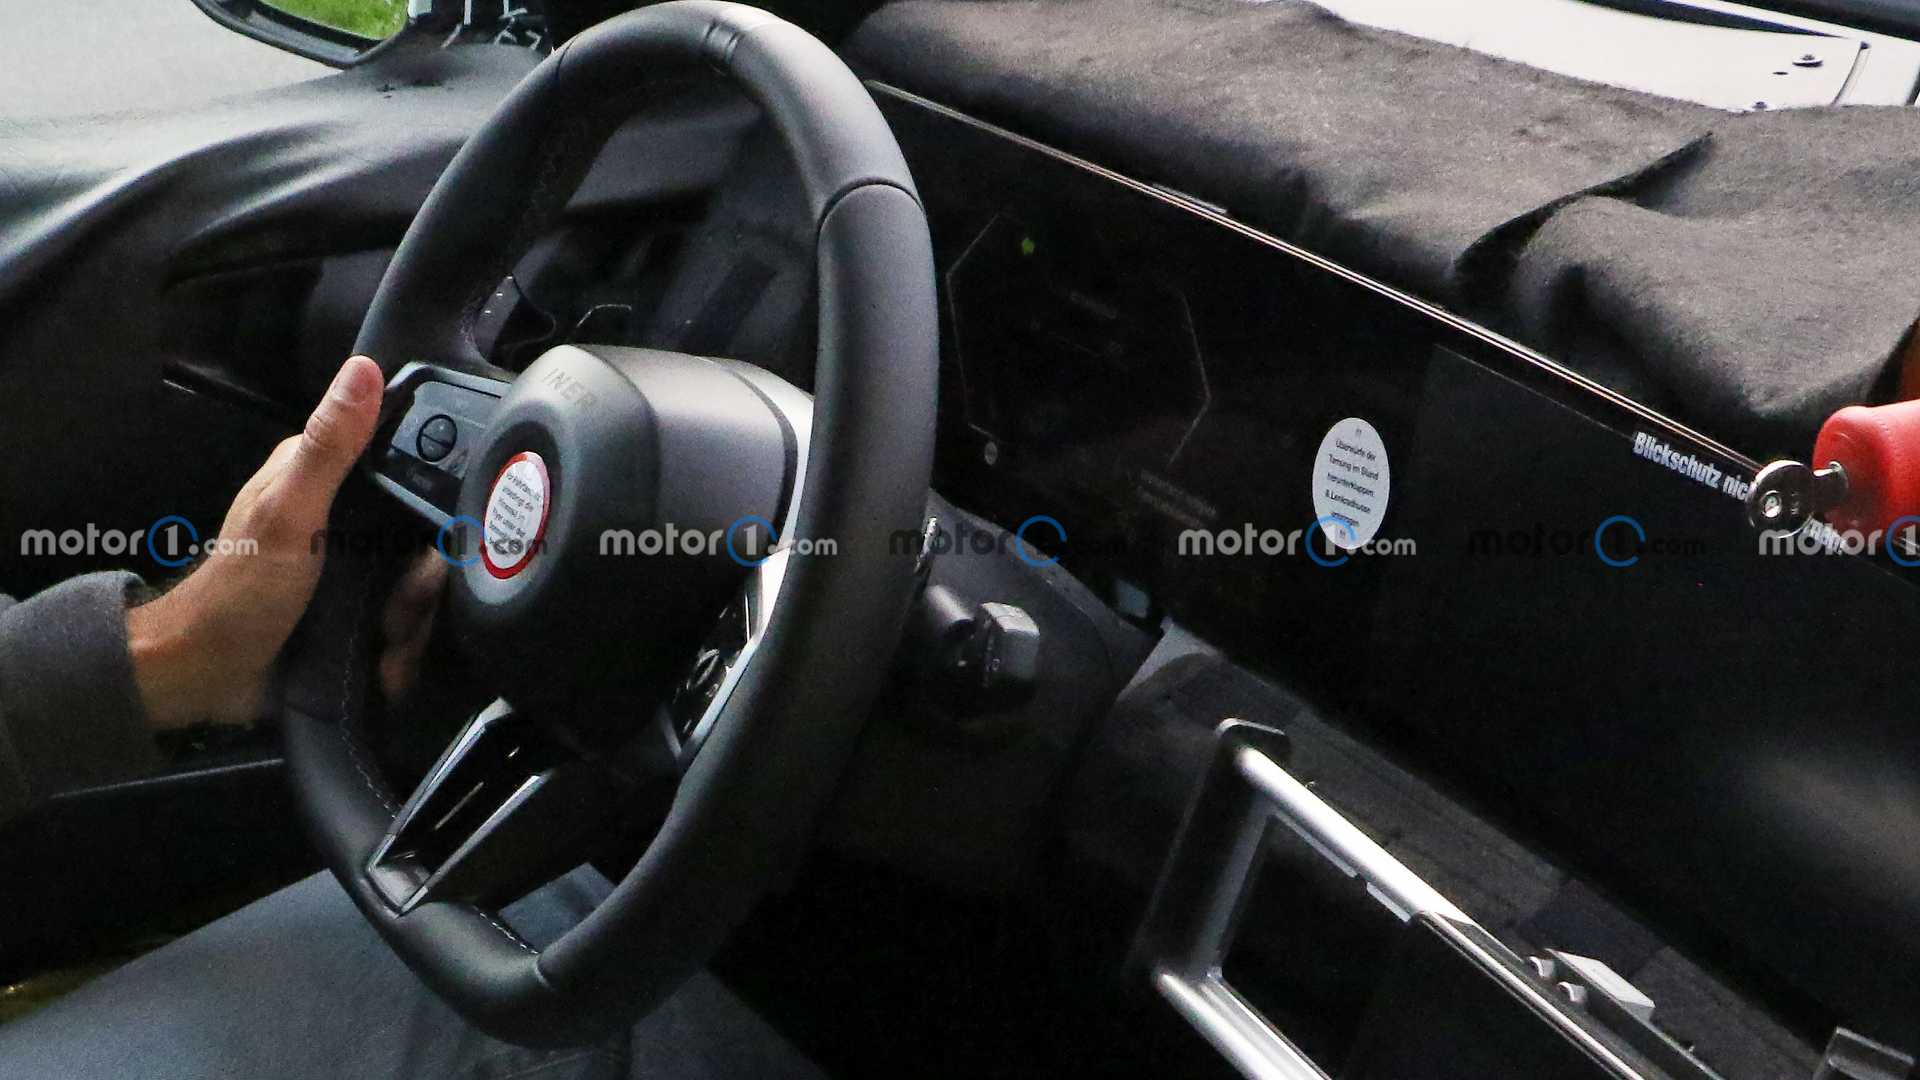 BMW X3 2025 thế hệ mới sắp ra mắt và những điều cần biết new-bmw-x3-interior-spy-photo-1.jpg